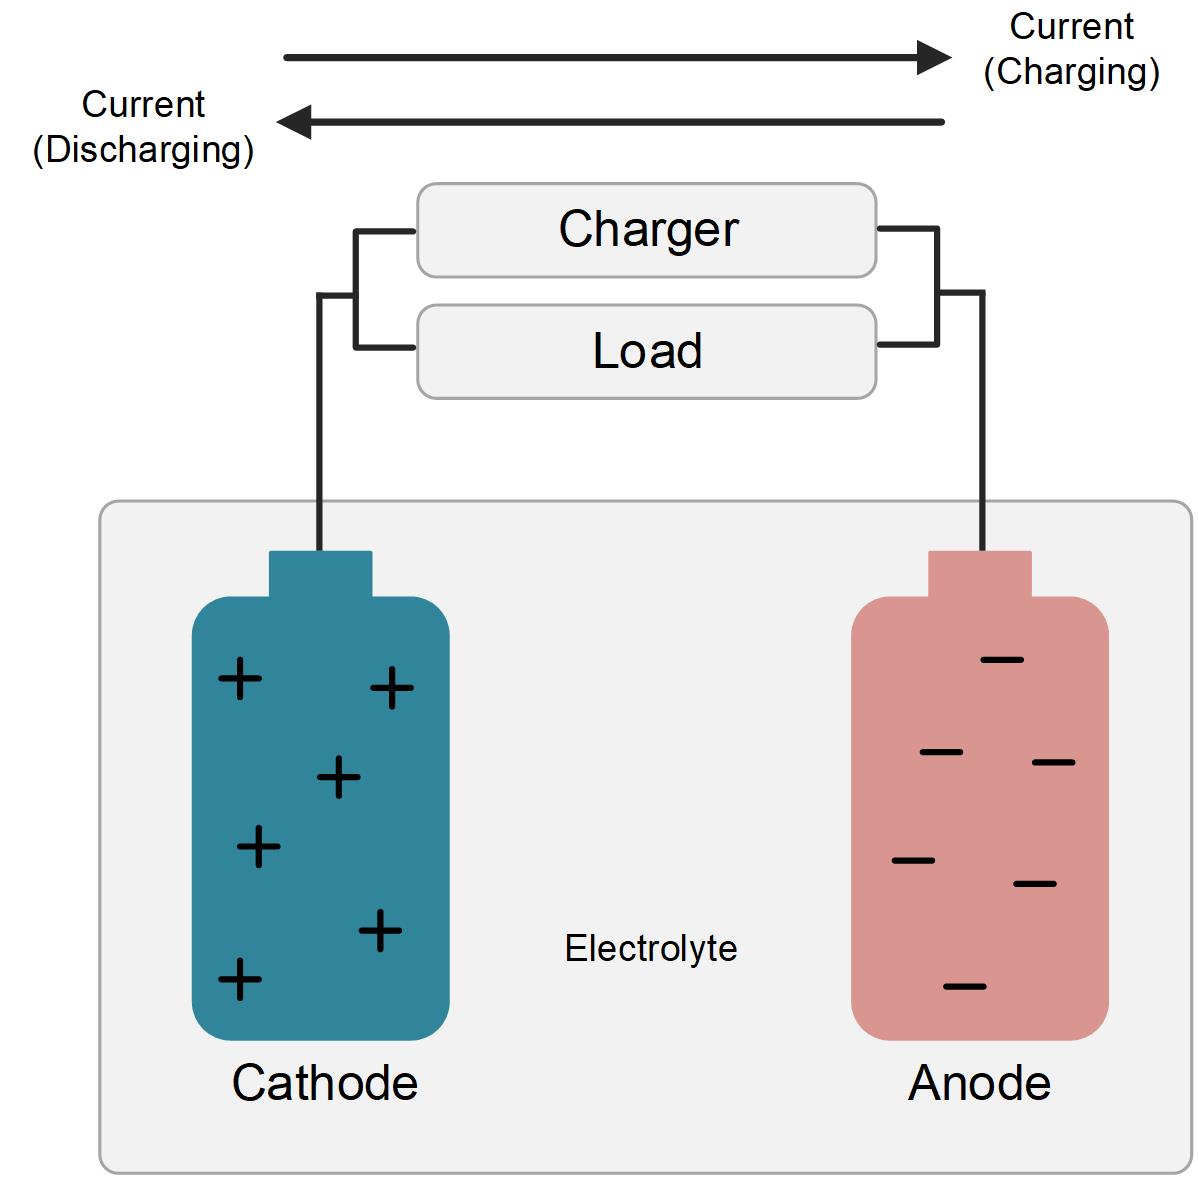 電池管理系統：電池化學成分如何影響電池充電 IC 的選擇